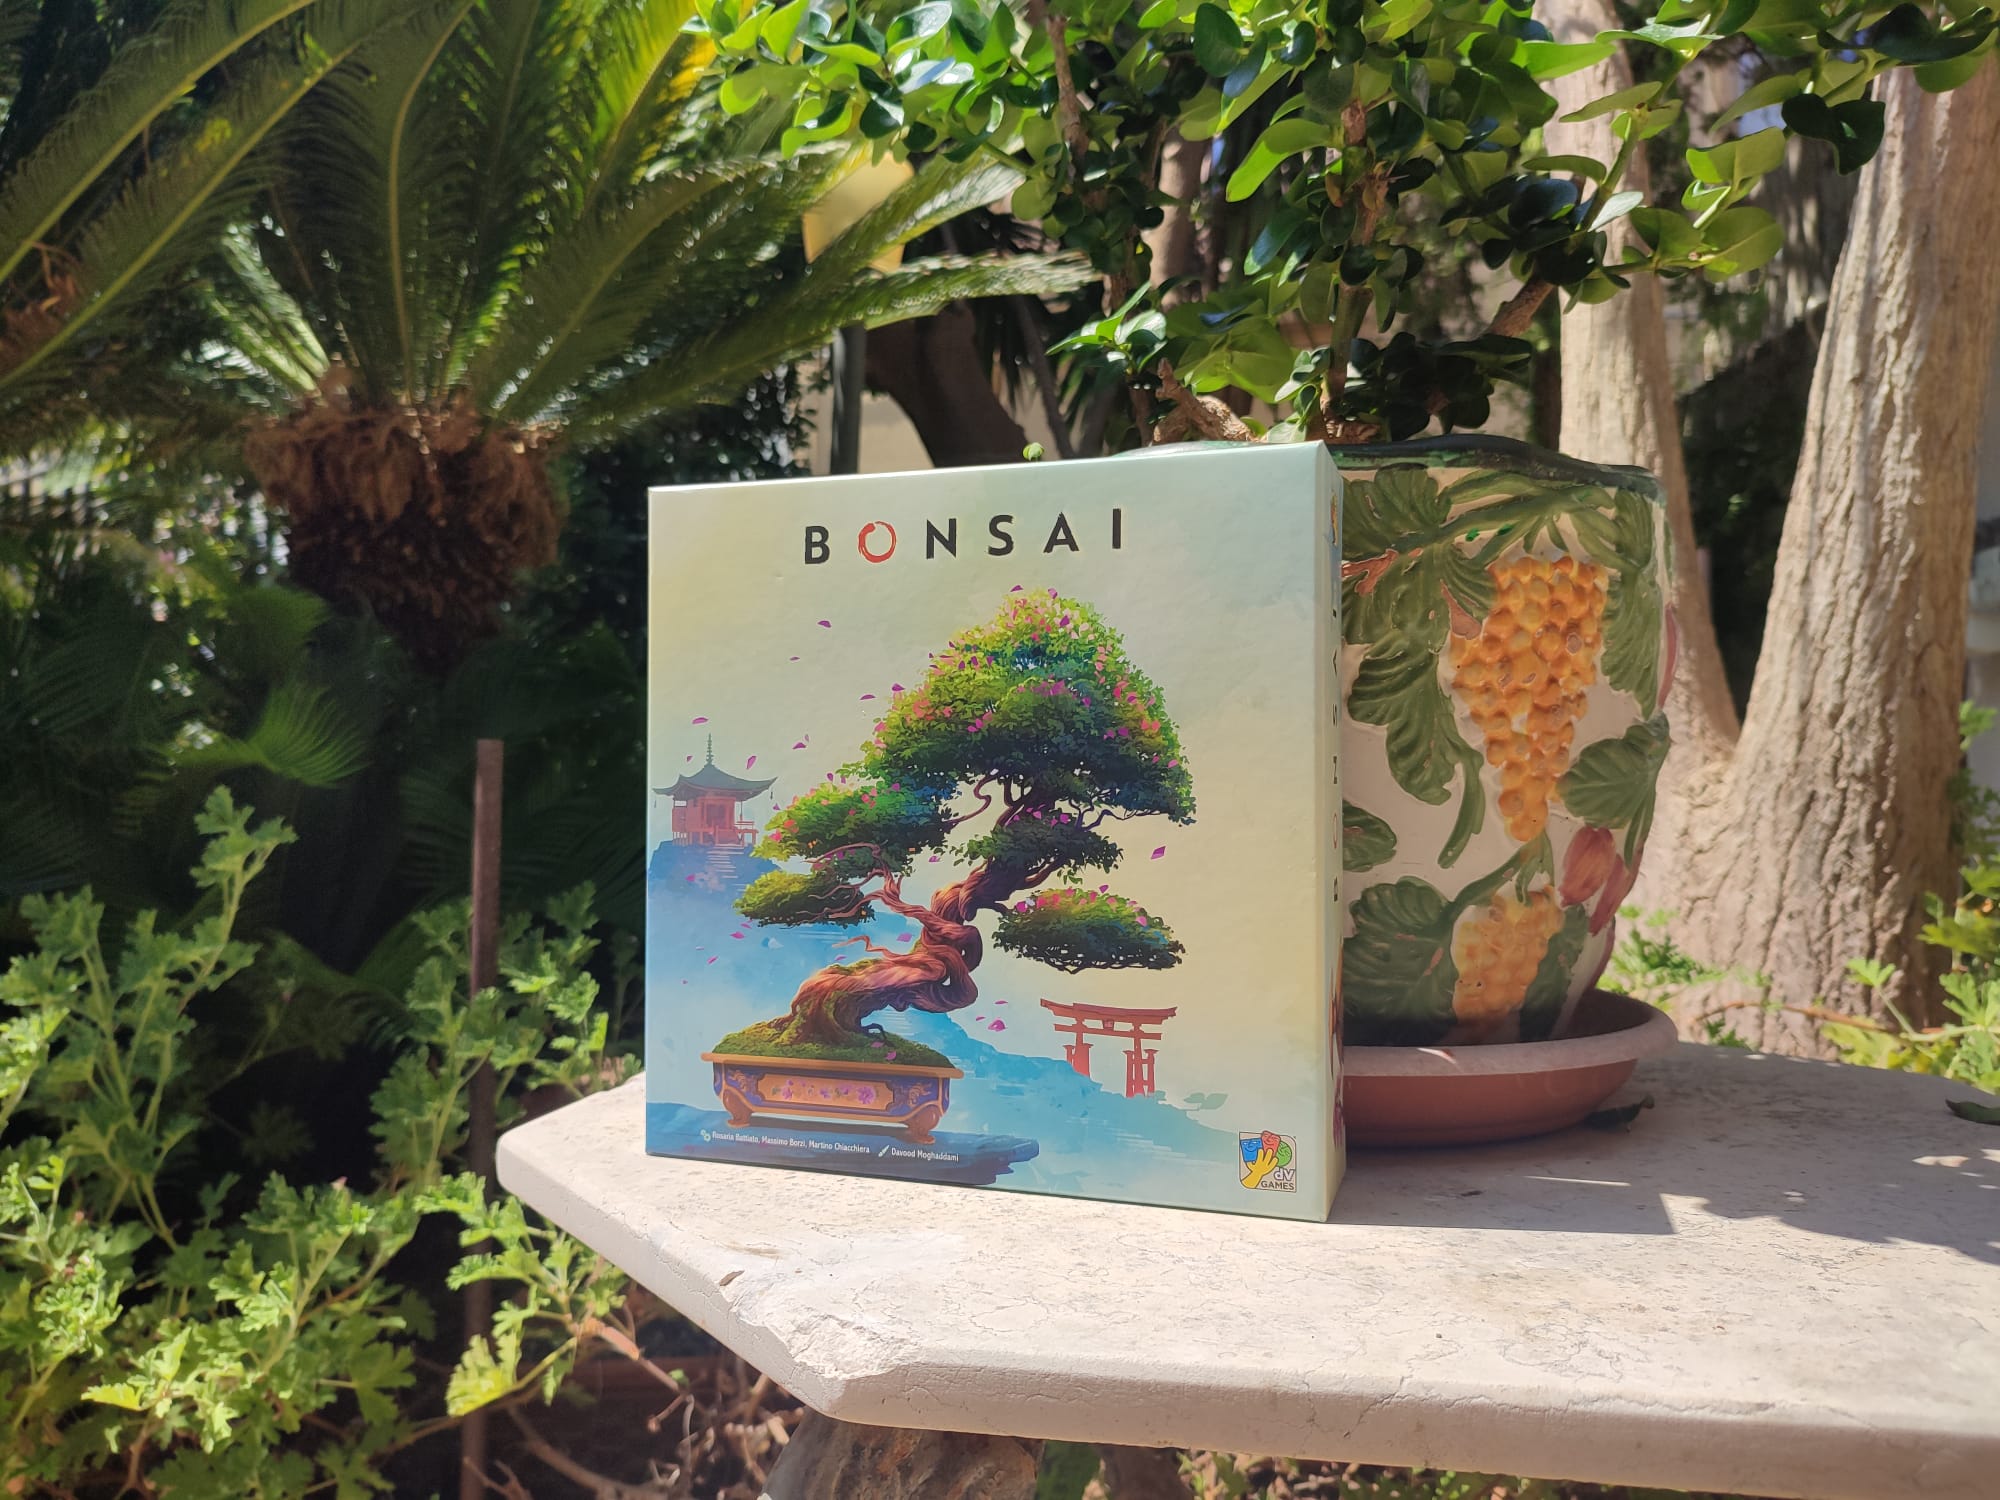 Anteprima Bonsai: il gioco da tavolo che rende divertente coltivare 